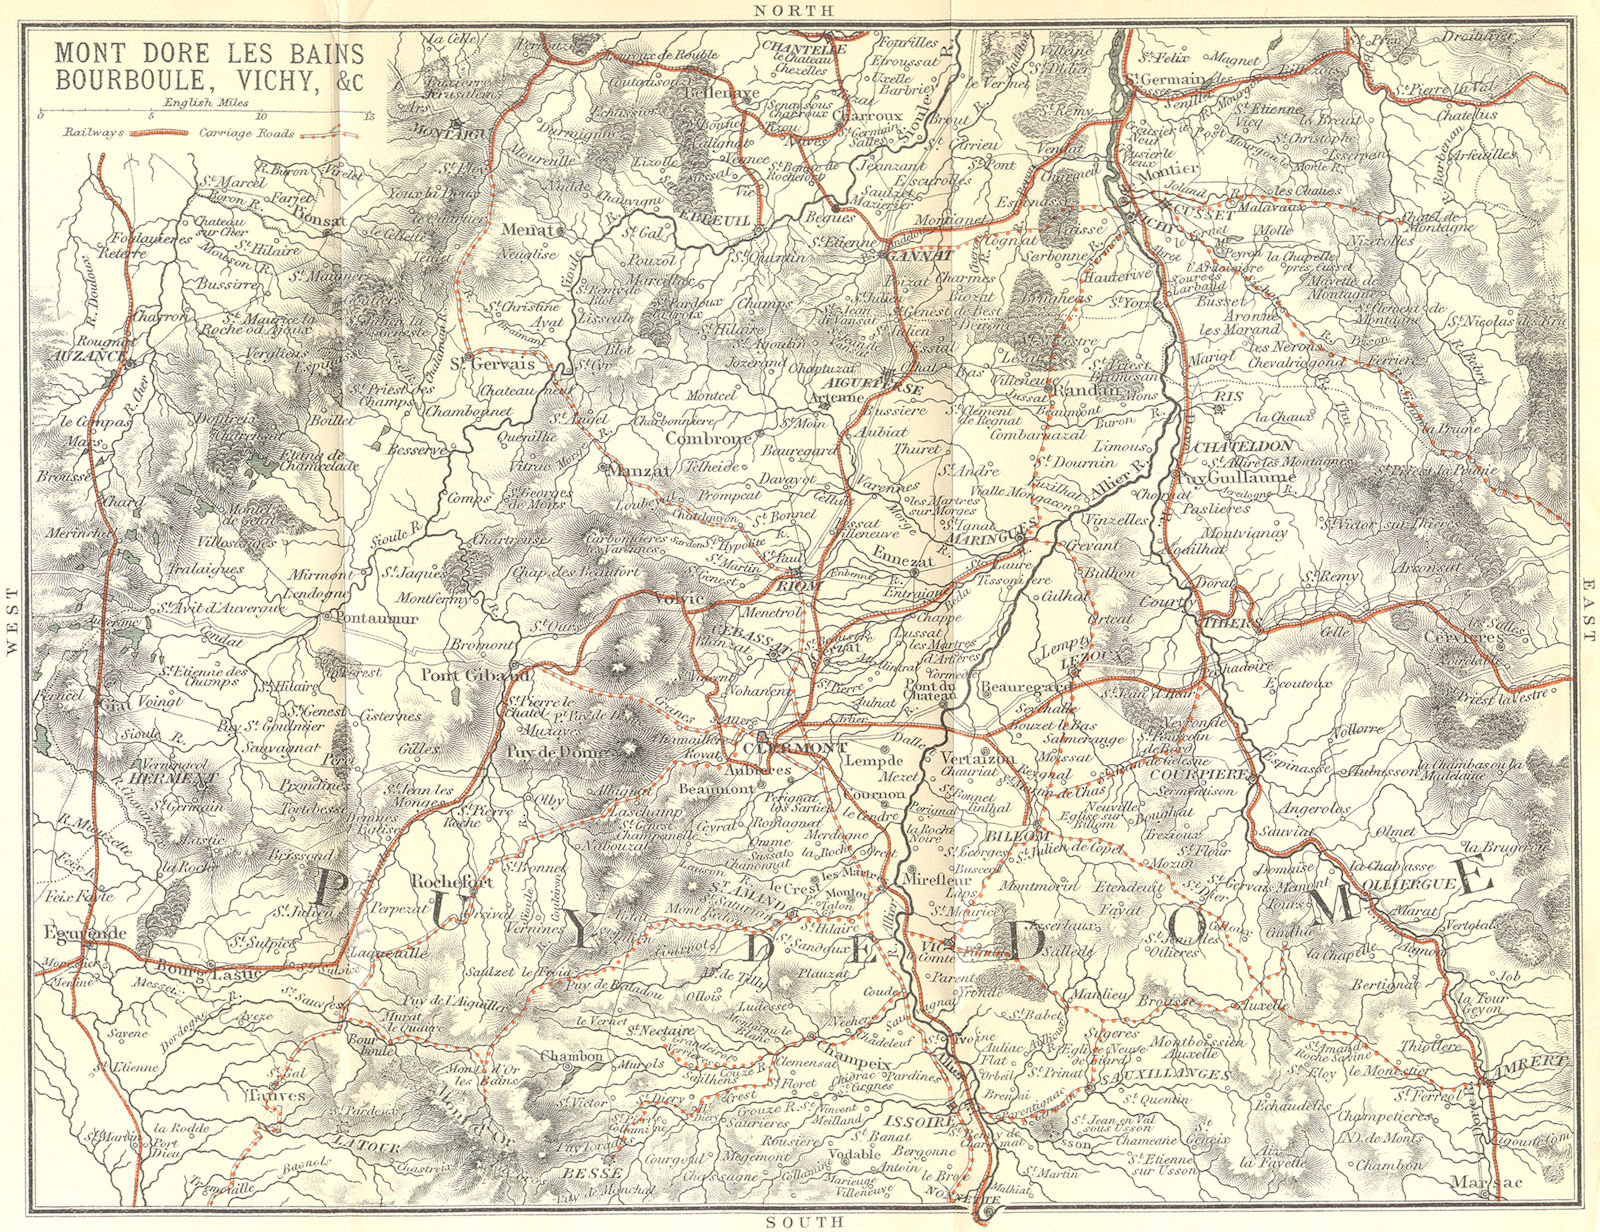 PUY-DE-DÔME. Mont Dore Bains Bourboule, Vichy 1899 old antique map plan chart